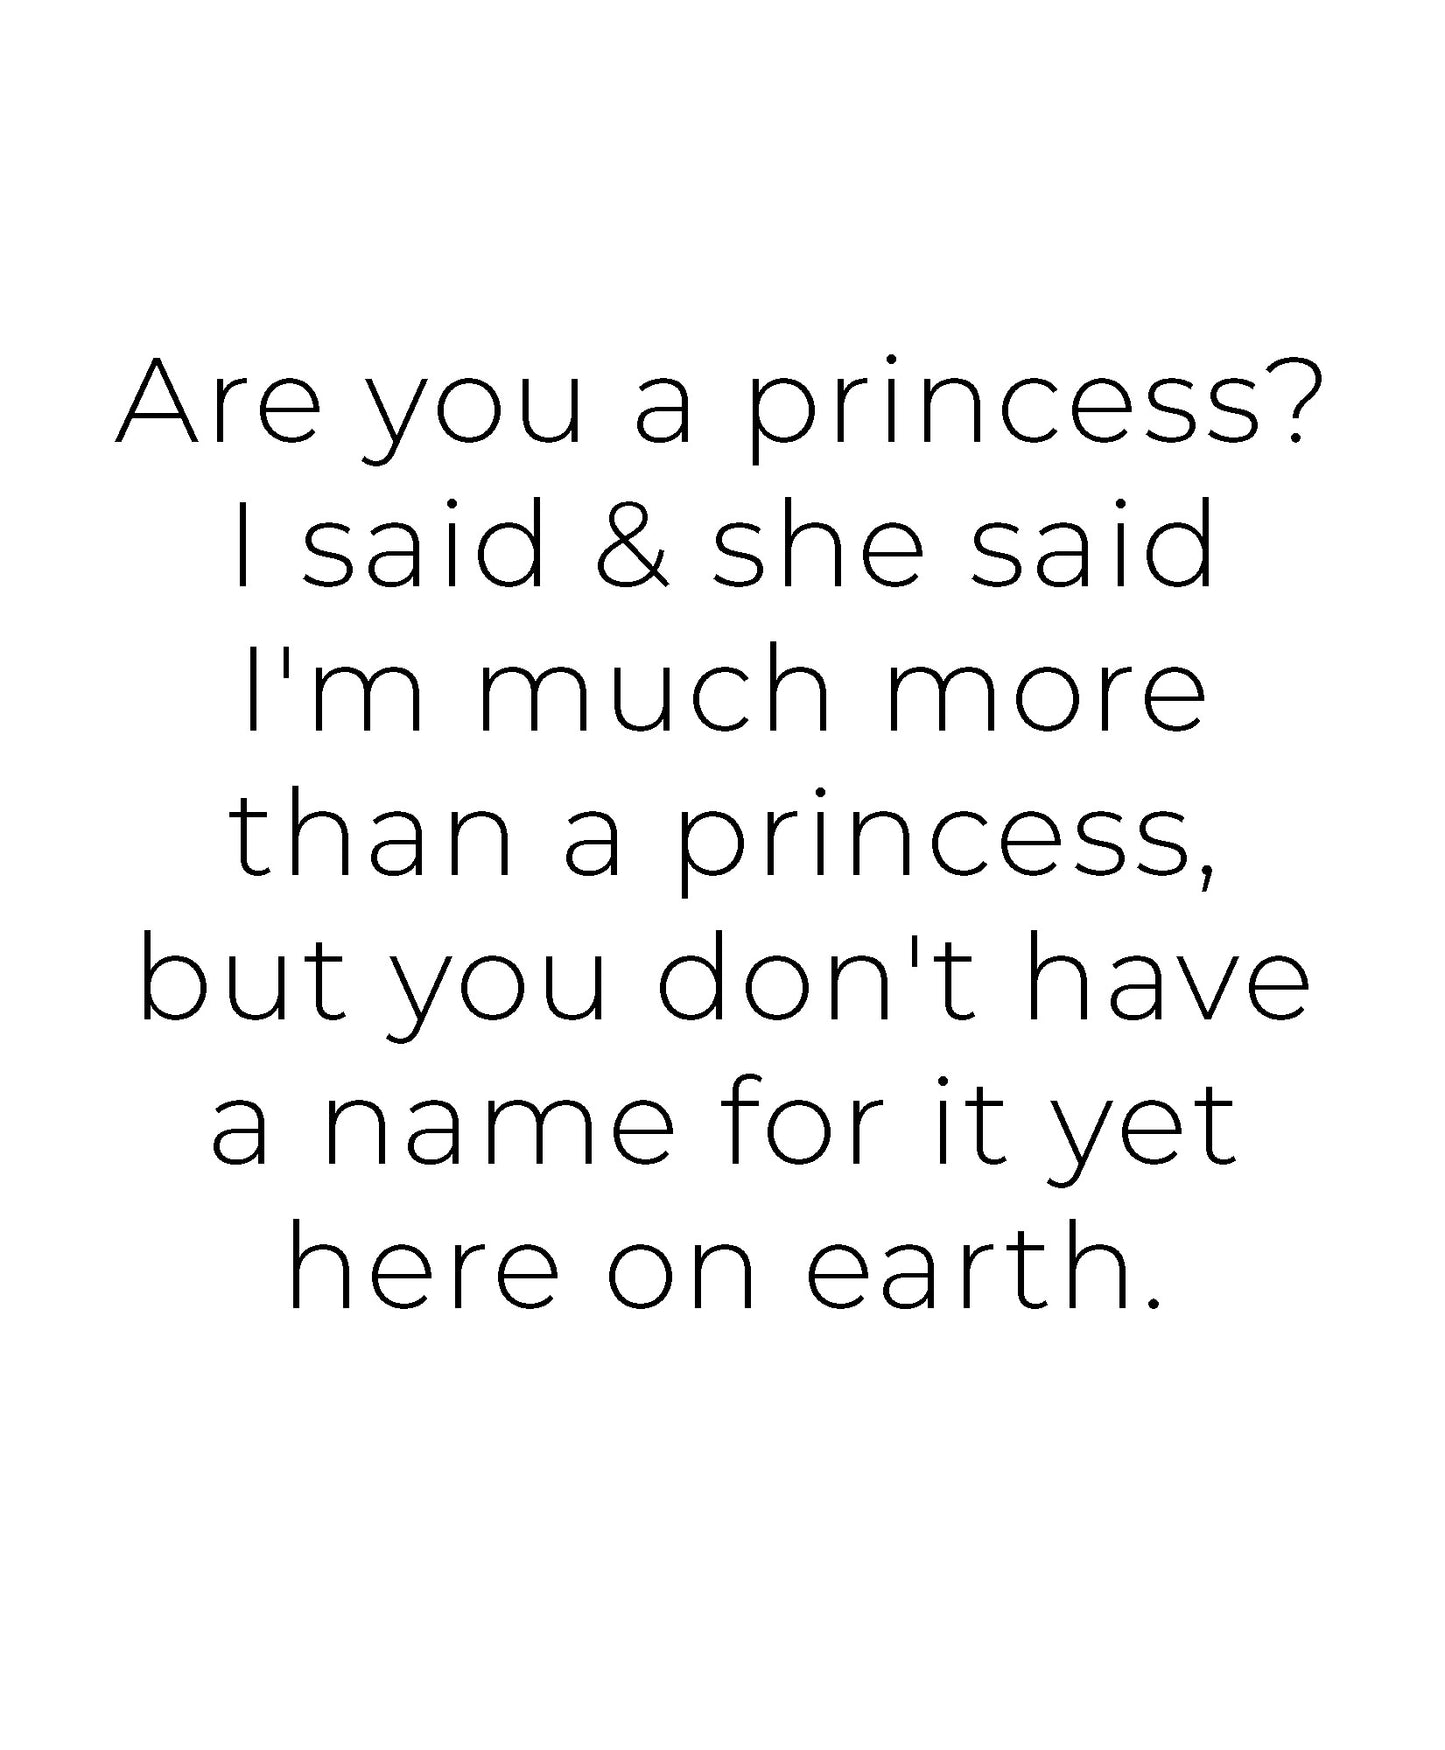 More Than a Princess 8x10